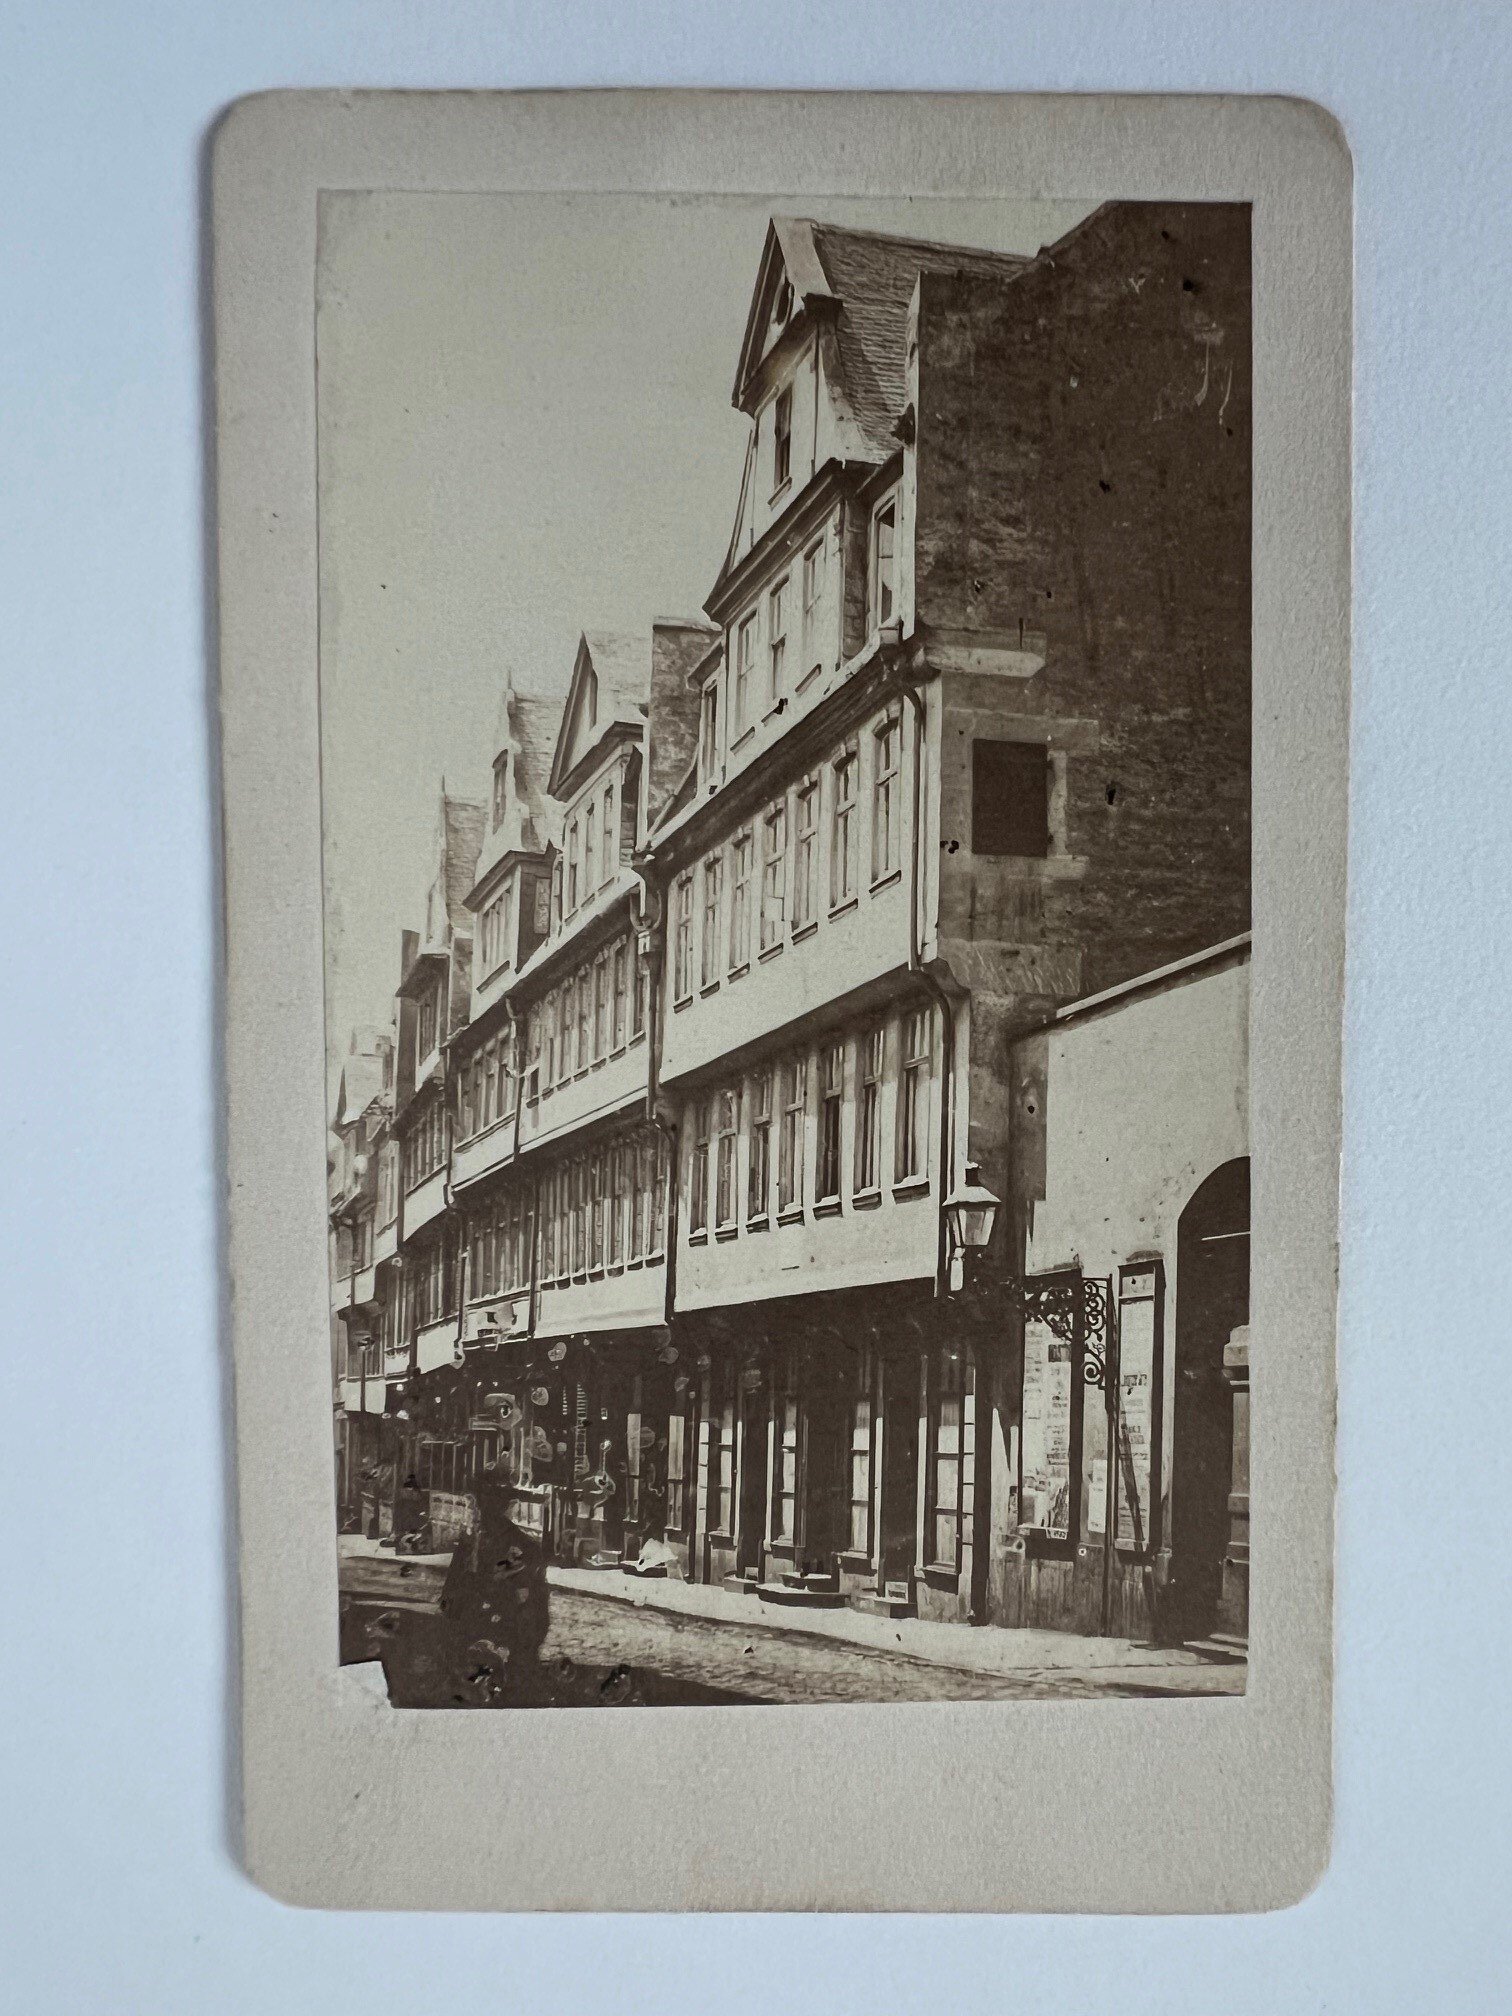 CdV, Straub und Kühn, Frankfurt, Das Goethe-Haus, ca. 1880. (Taunus-Rhein-Main - Regionalgeschichtliche Sammlung Dr. Stefan Naas CC BY-NC-SA)